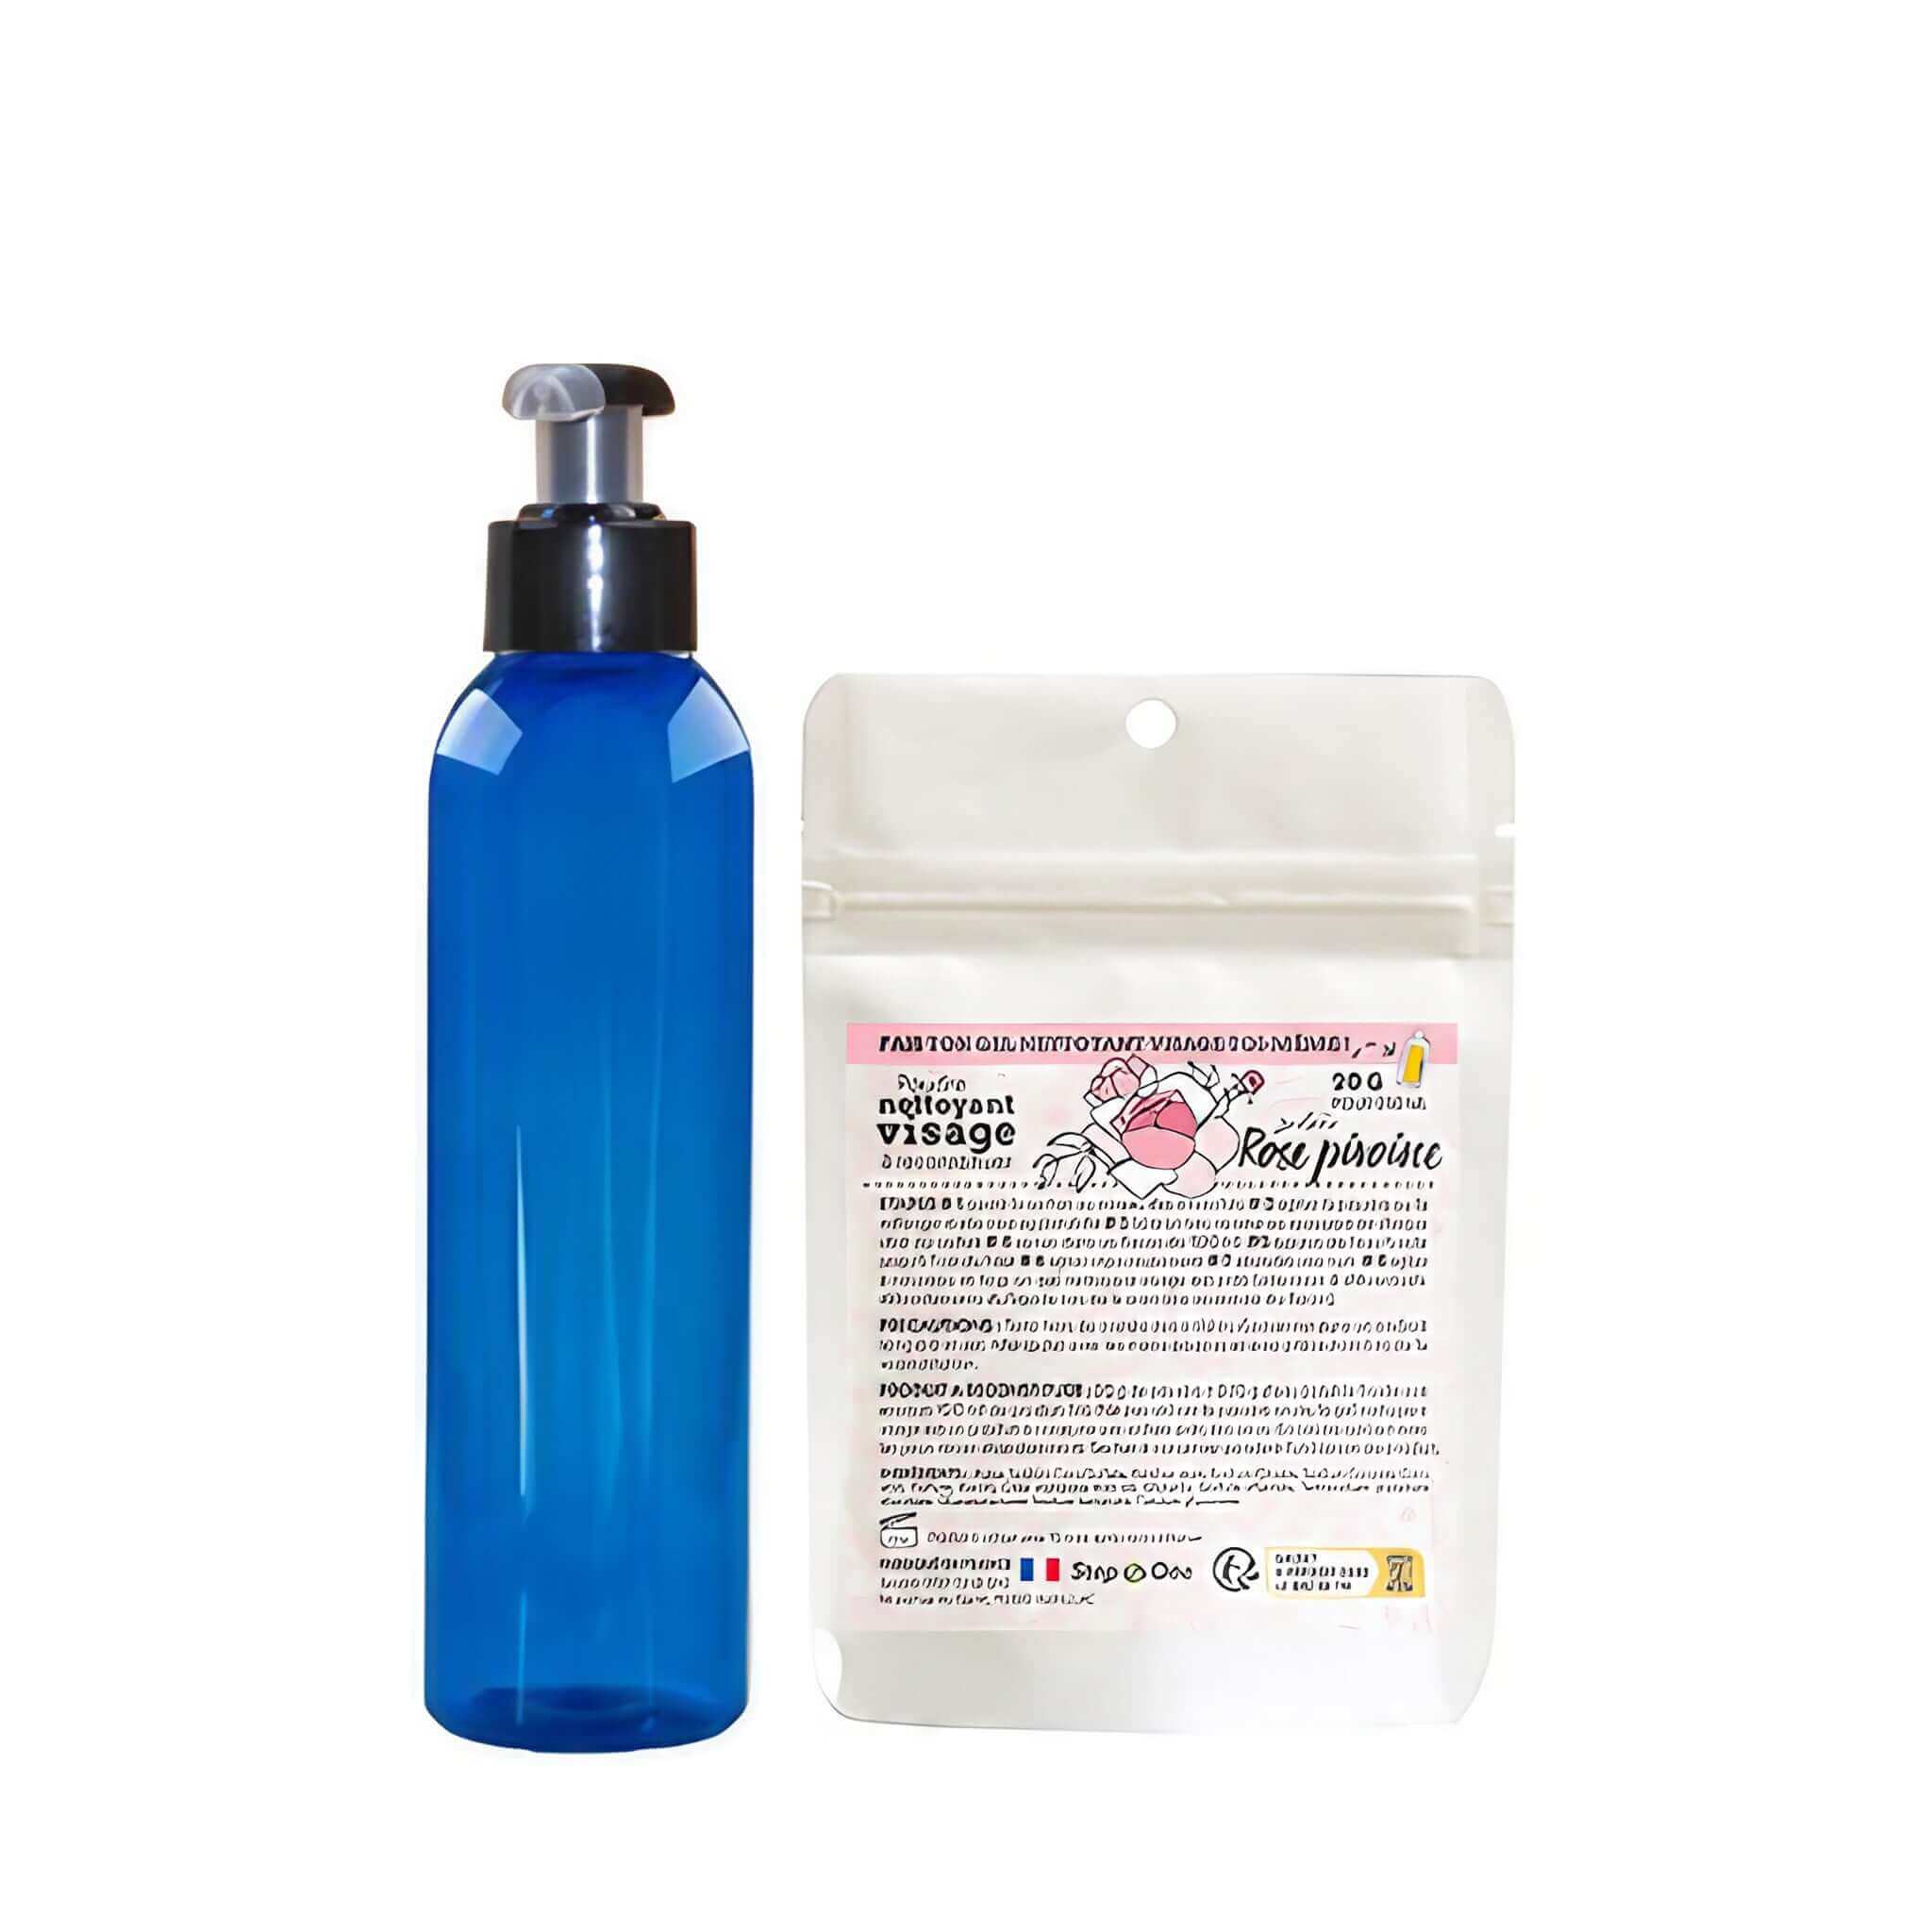 Un kit de démarrage pour nettoyant visage gel avec une senteur de rose et pivoine, présenté comme une option zéro déchet